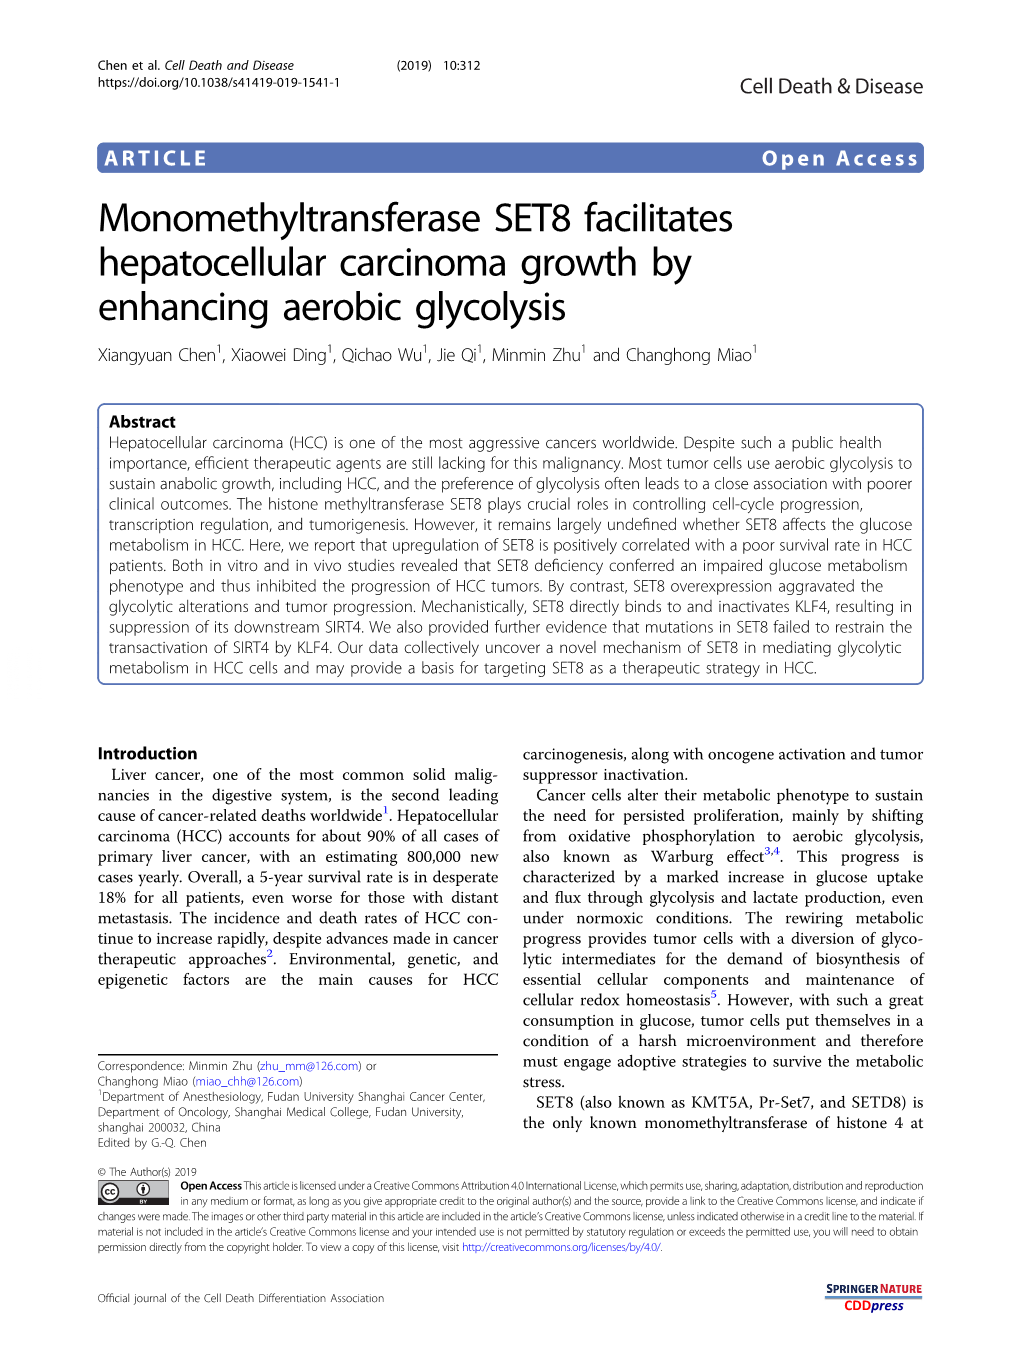 Monomethyltransferase SET8 Facilitates Hepatocellular Carcinoma